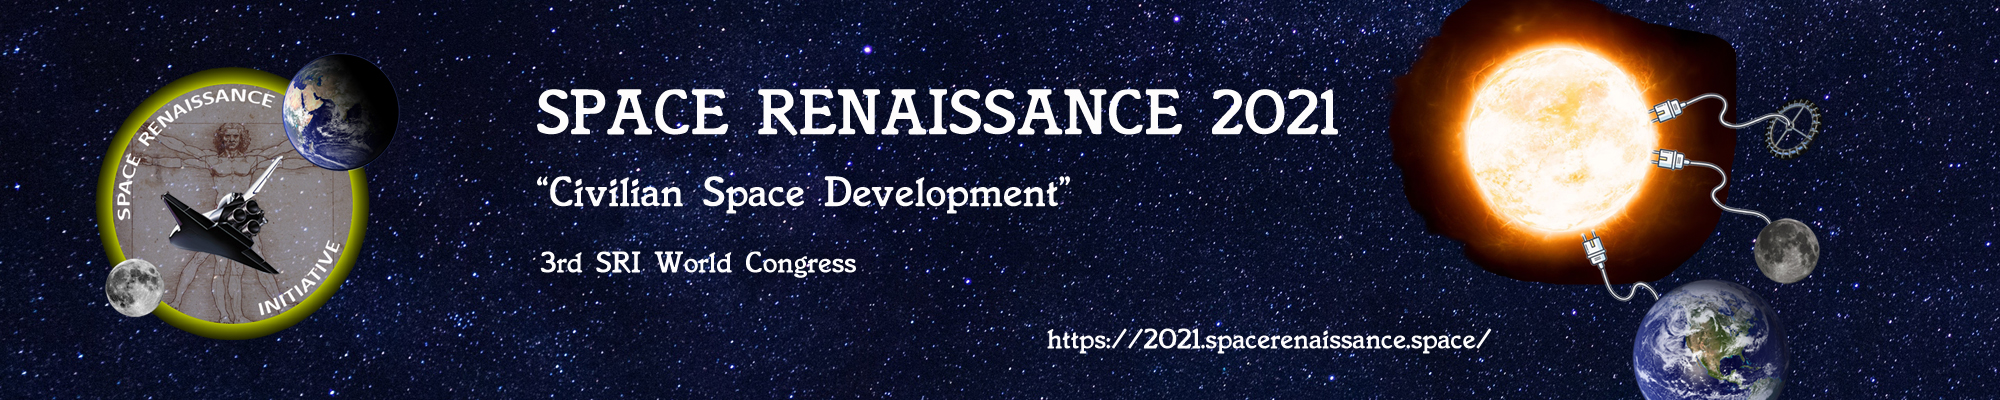 2021 Space Renaissance Congress “Civilian Space Development” – Announcement